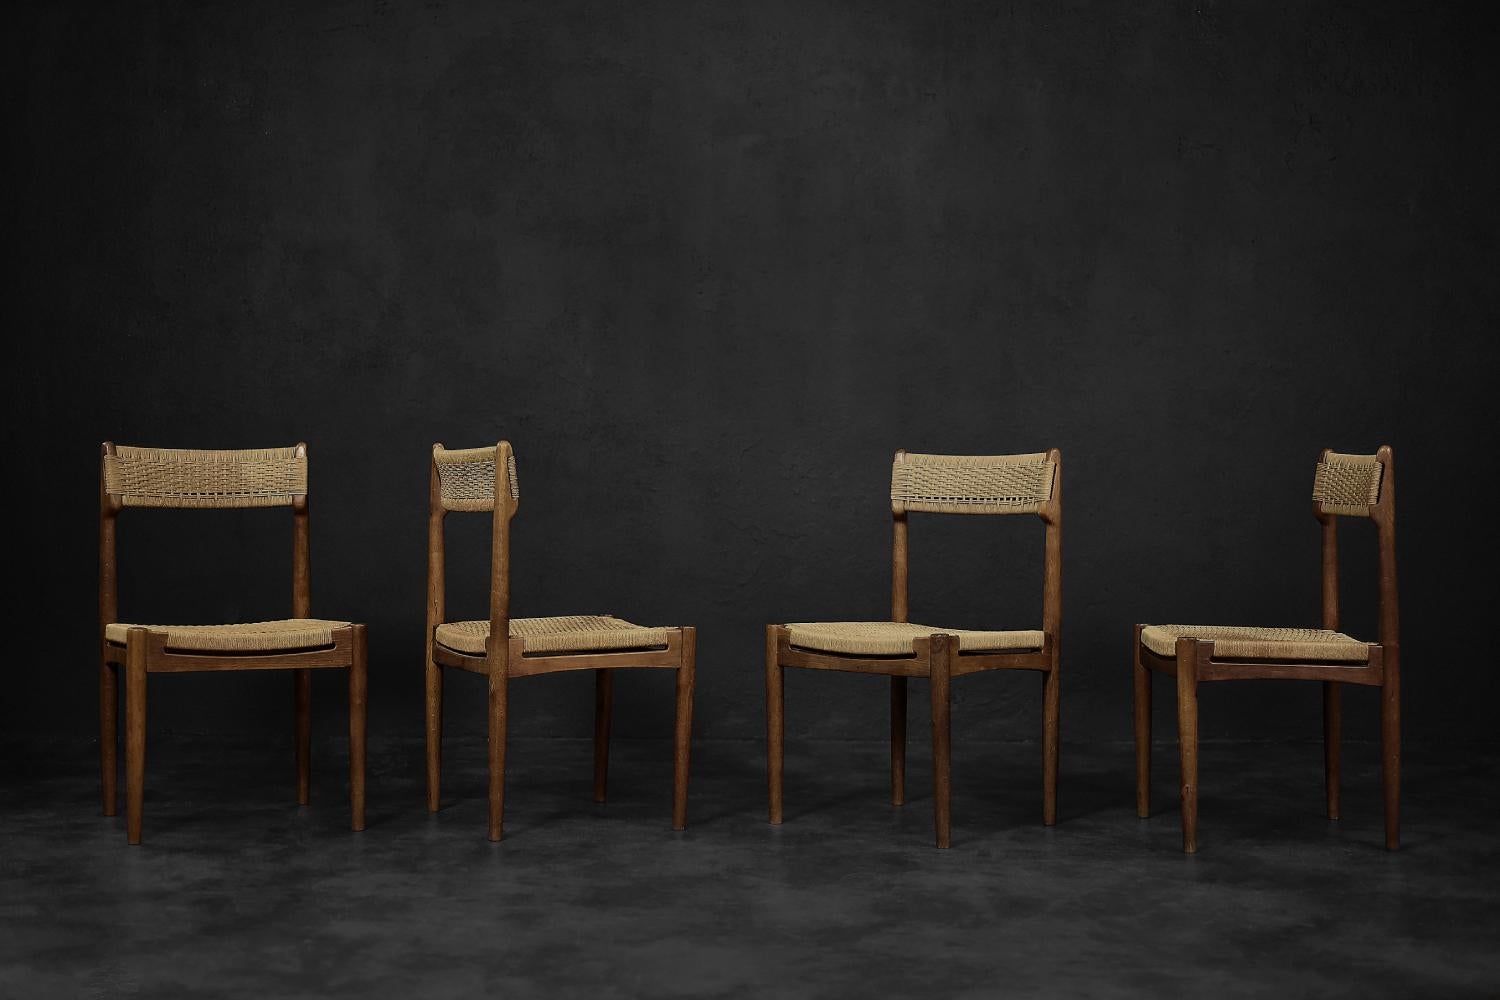 Dieses Set aus vier modernistischen Stühlen wurde von E. Knudsen entworfen und 1952 vom dänischen Möbelhersteller K. Knudsen & Søn hergestellt. Dieses Modell wurde zum ersten Mal auf dem Kongress in Federica ausgestellt, wo es entworfen wurde. Der